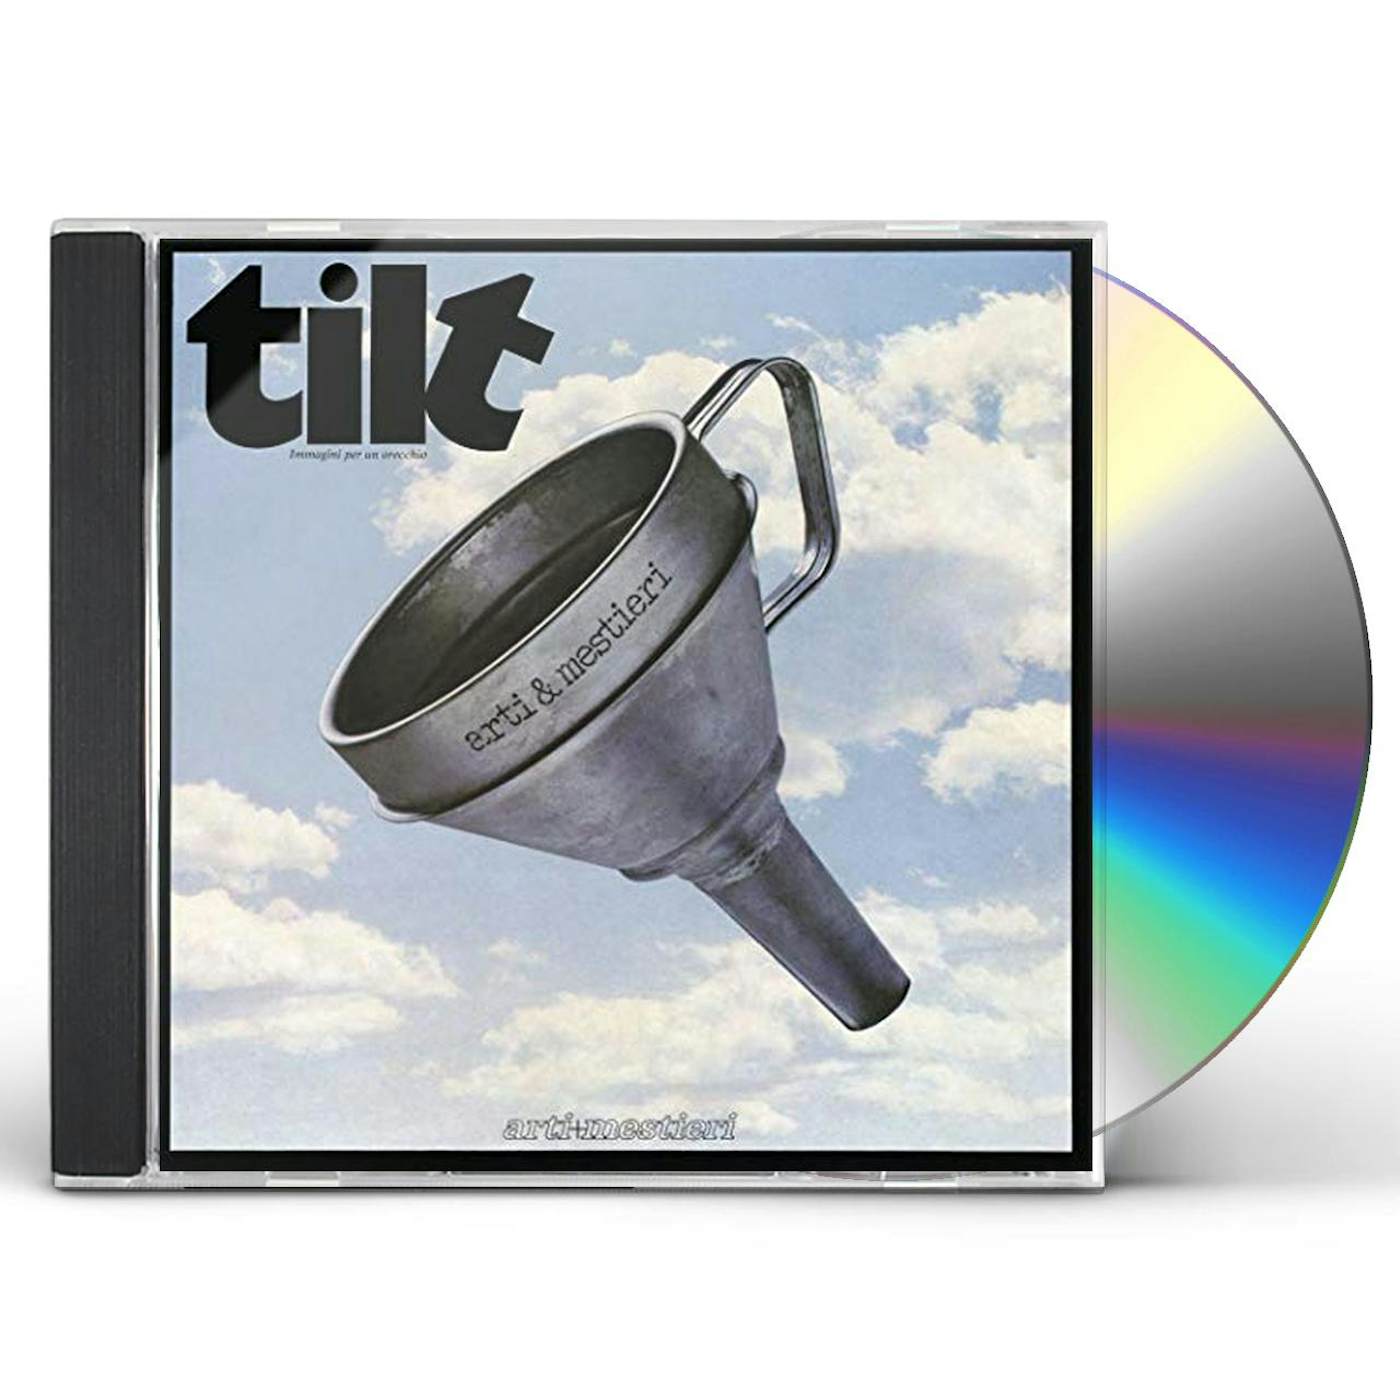 Arti & Mestieri TILT (IMMAGINI PER UN ORECCHIO) CD